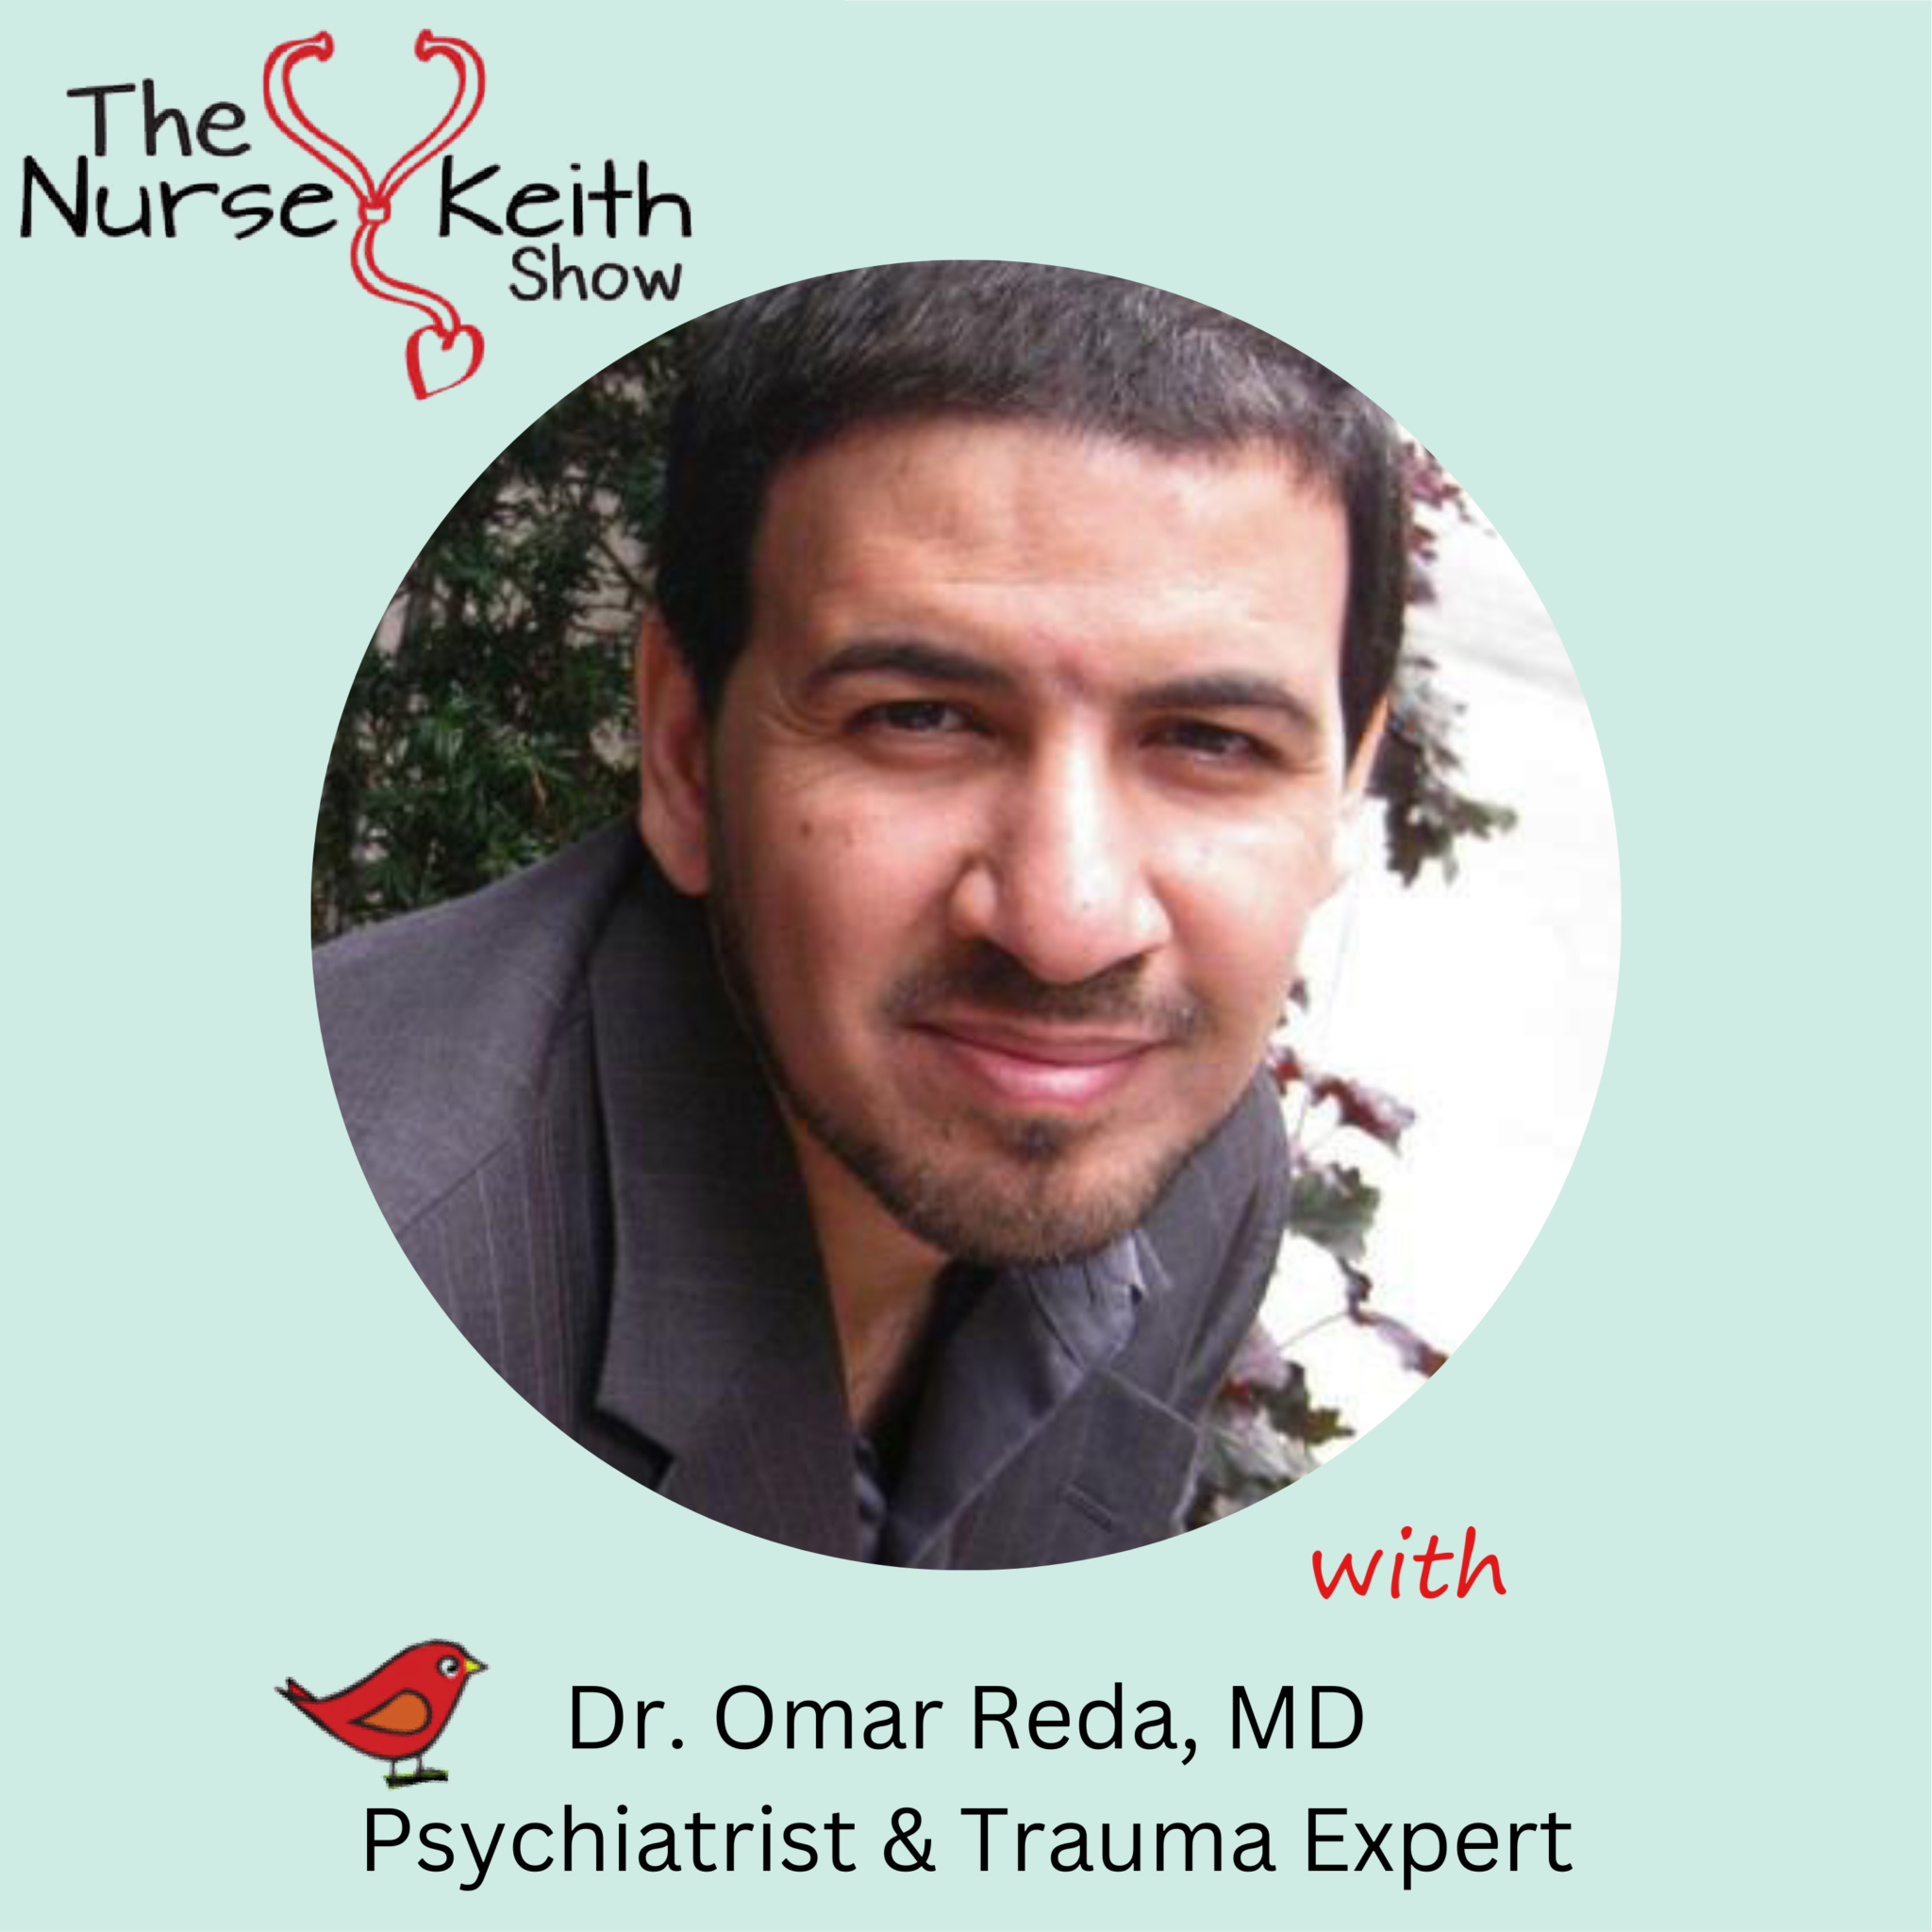 Dr. Omar Reda, MD